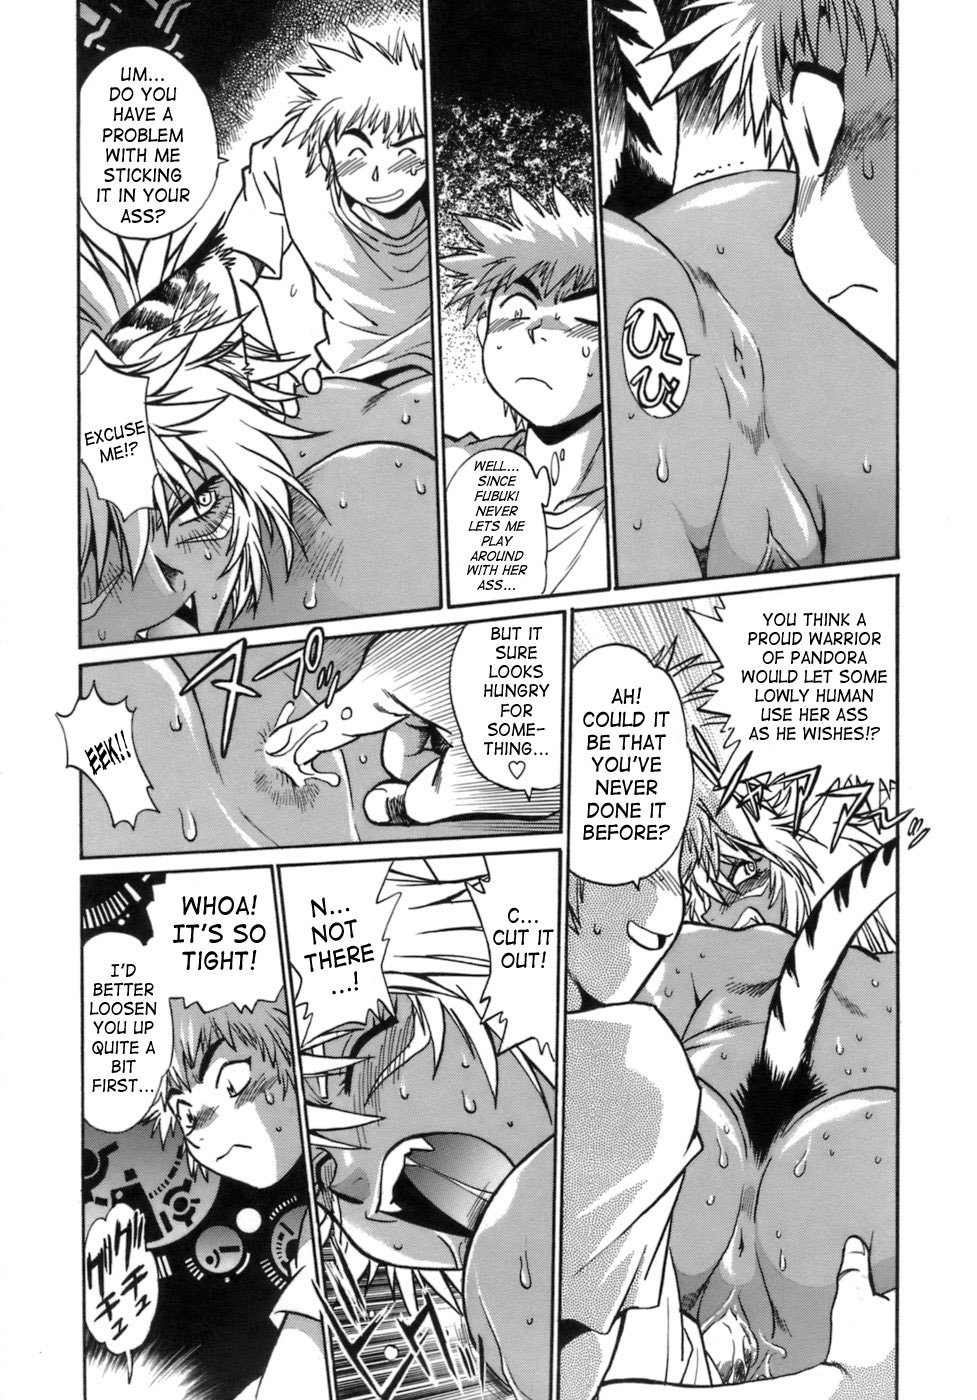 Tail Chaser Vol.1 148 hentai manga